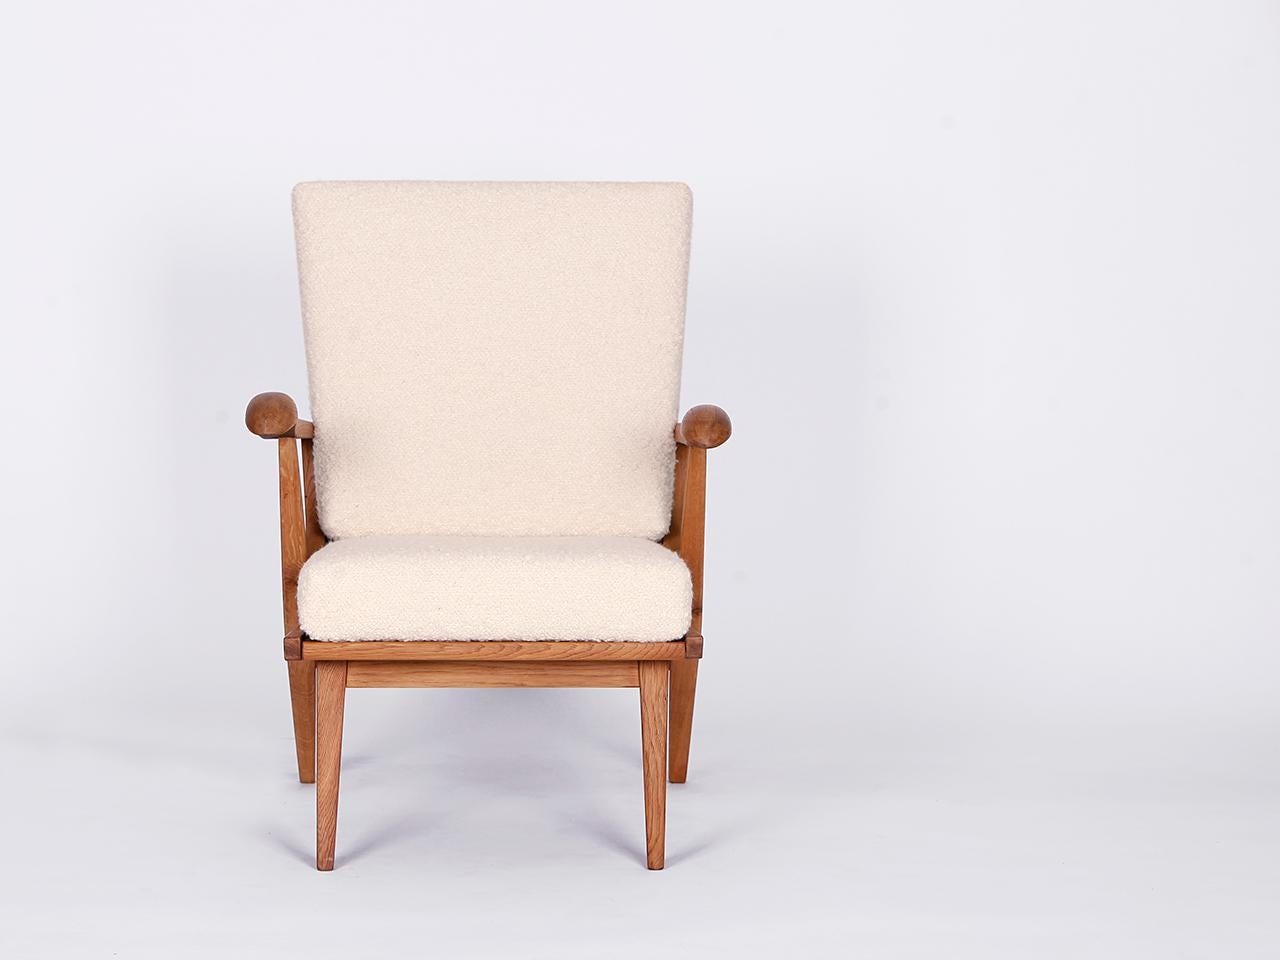 Boucle-Sessel aus der Mitte der 1960er Jahre, hergestellt in der ehemaligen Tschechoslowakei. Neu lackierte Holzteile, Polsterung aus massiver Kokosfaser. Vollständig restauriert. Mit einem wunderbar weichen englischen Boucle-Bezugsstoff aus Wolle.